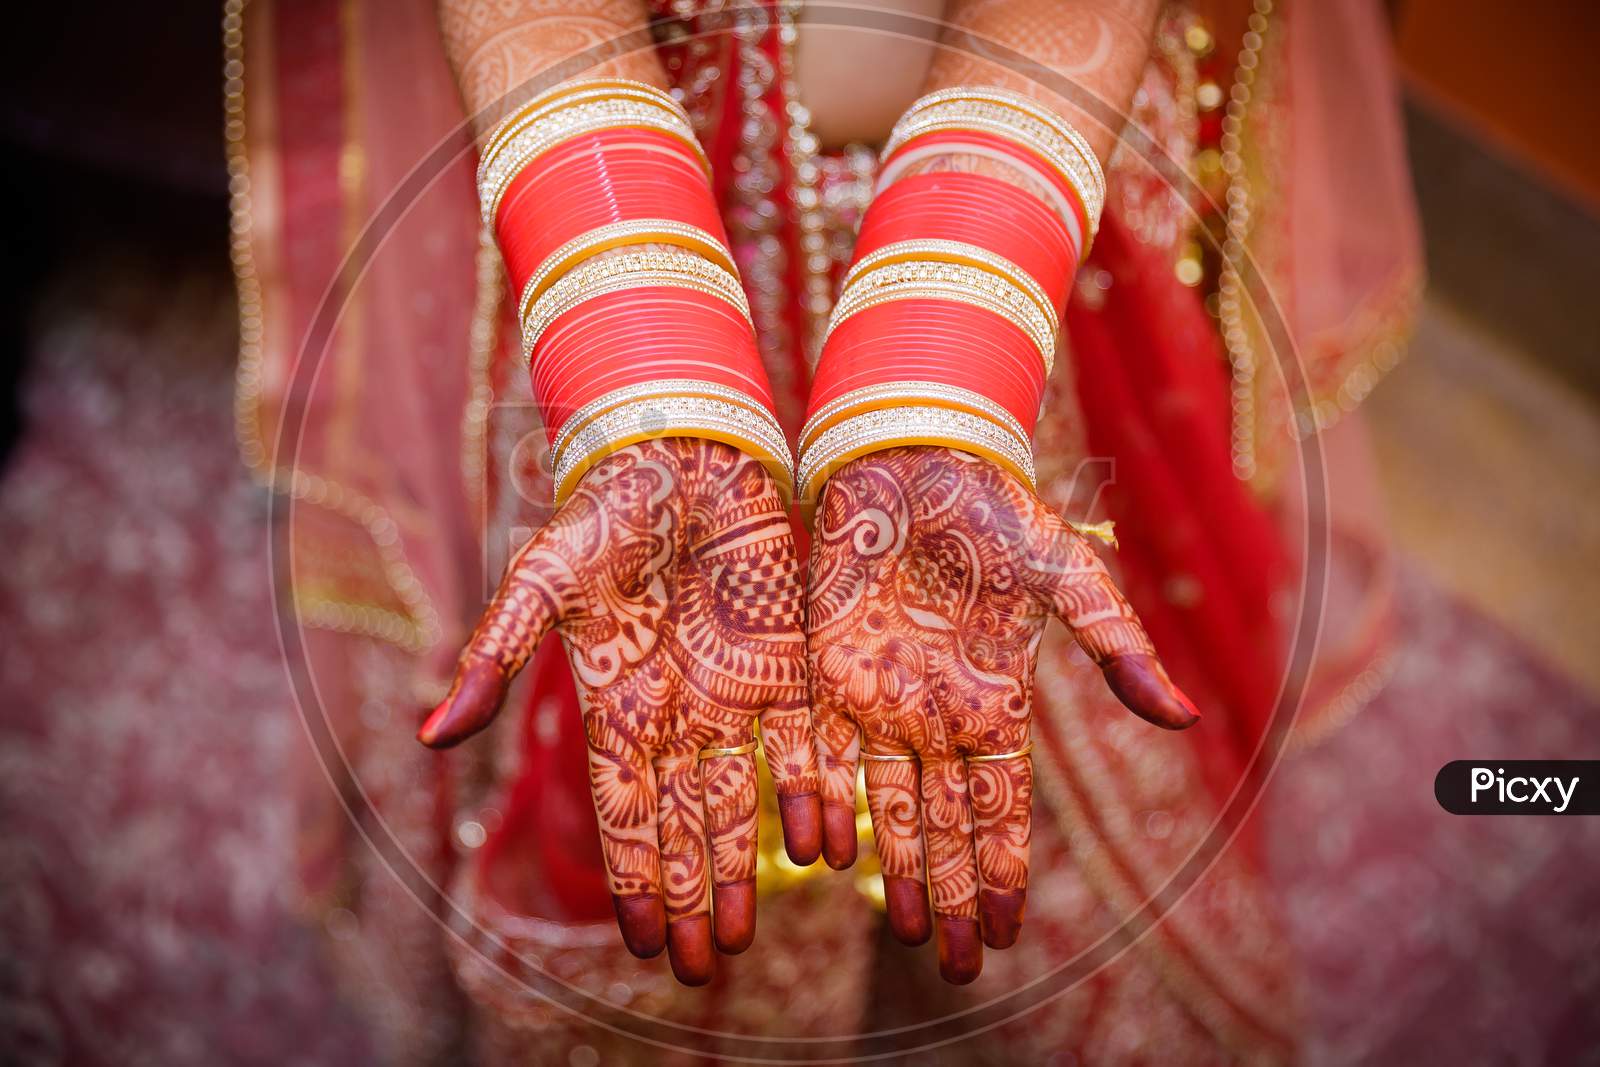 Indian Bride Hands